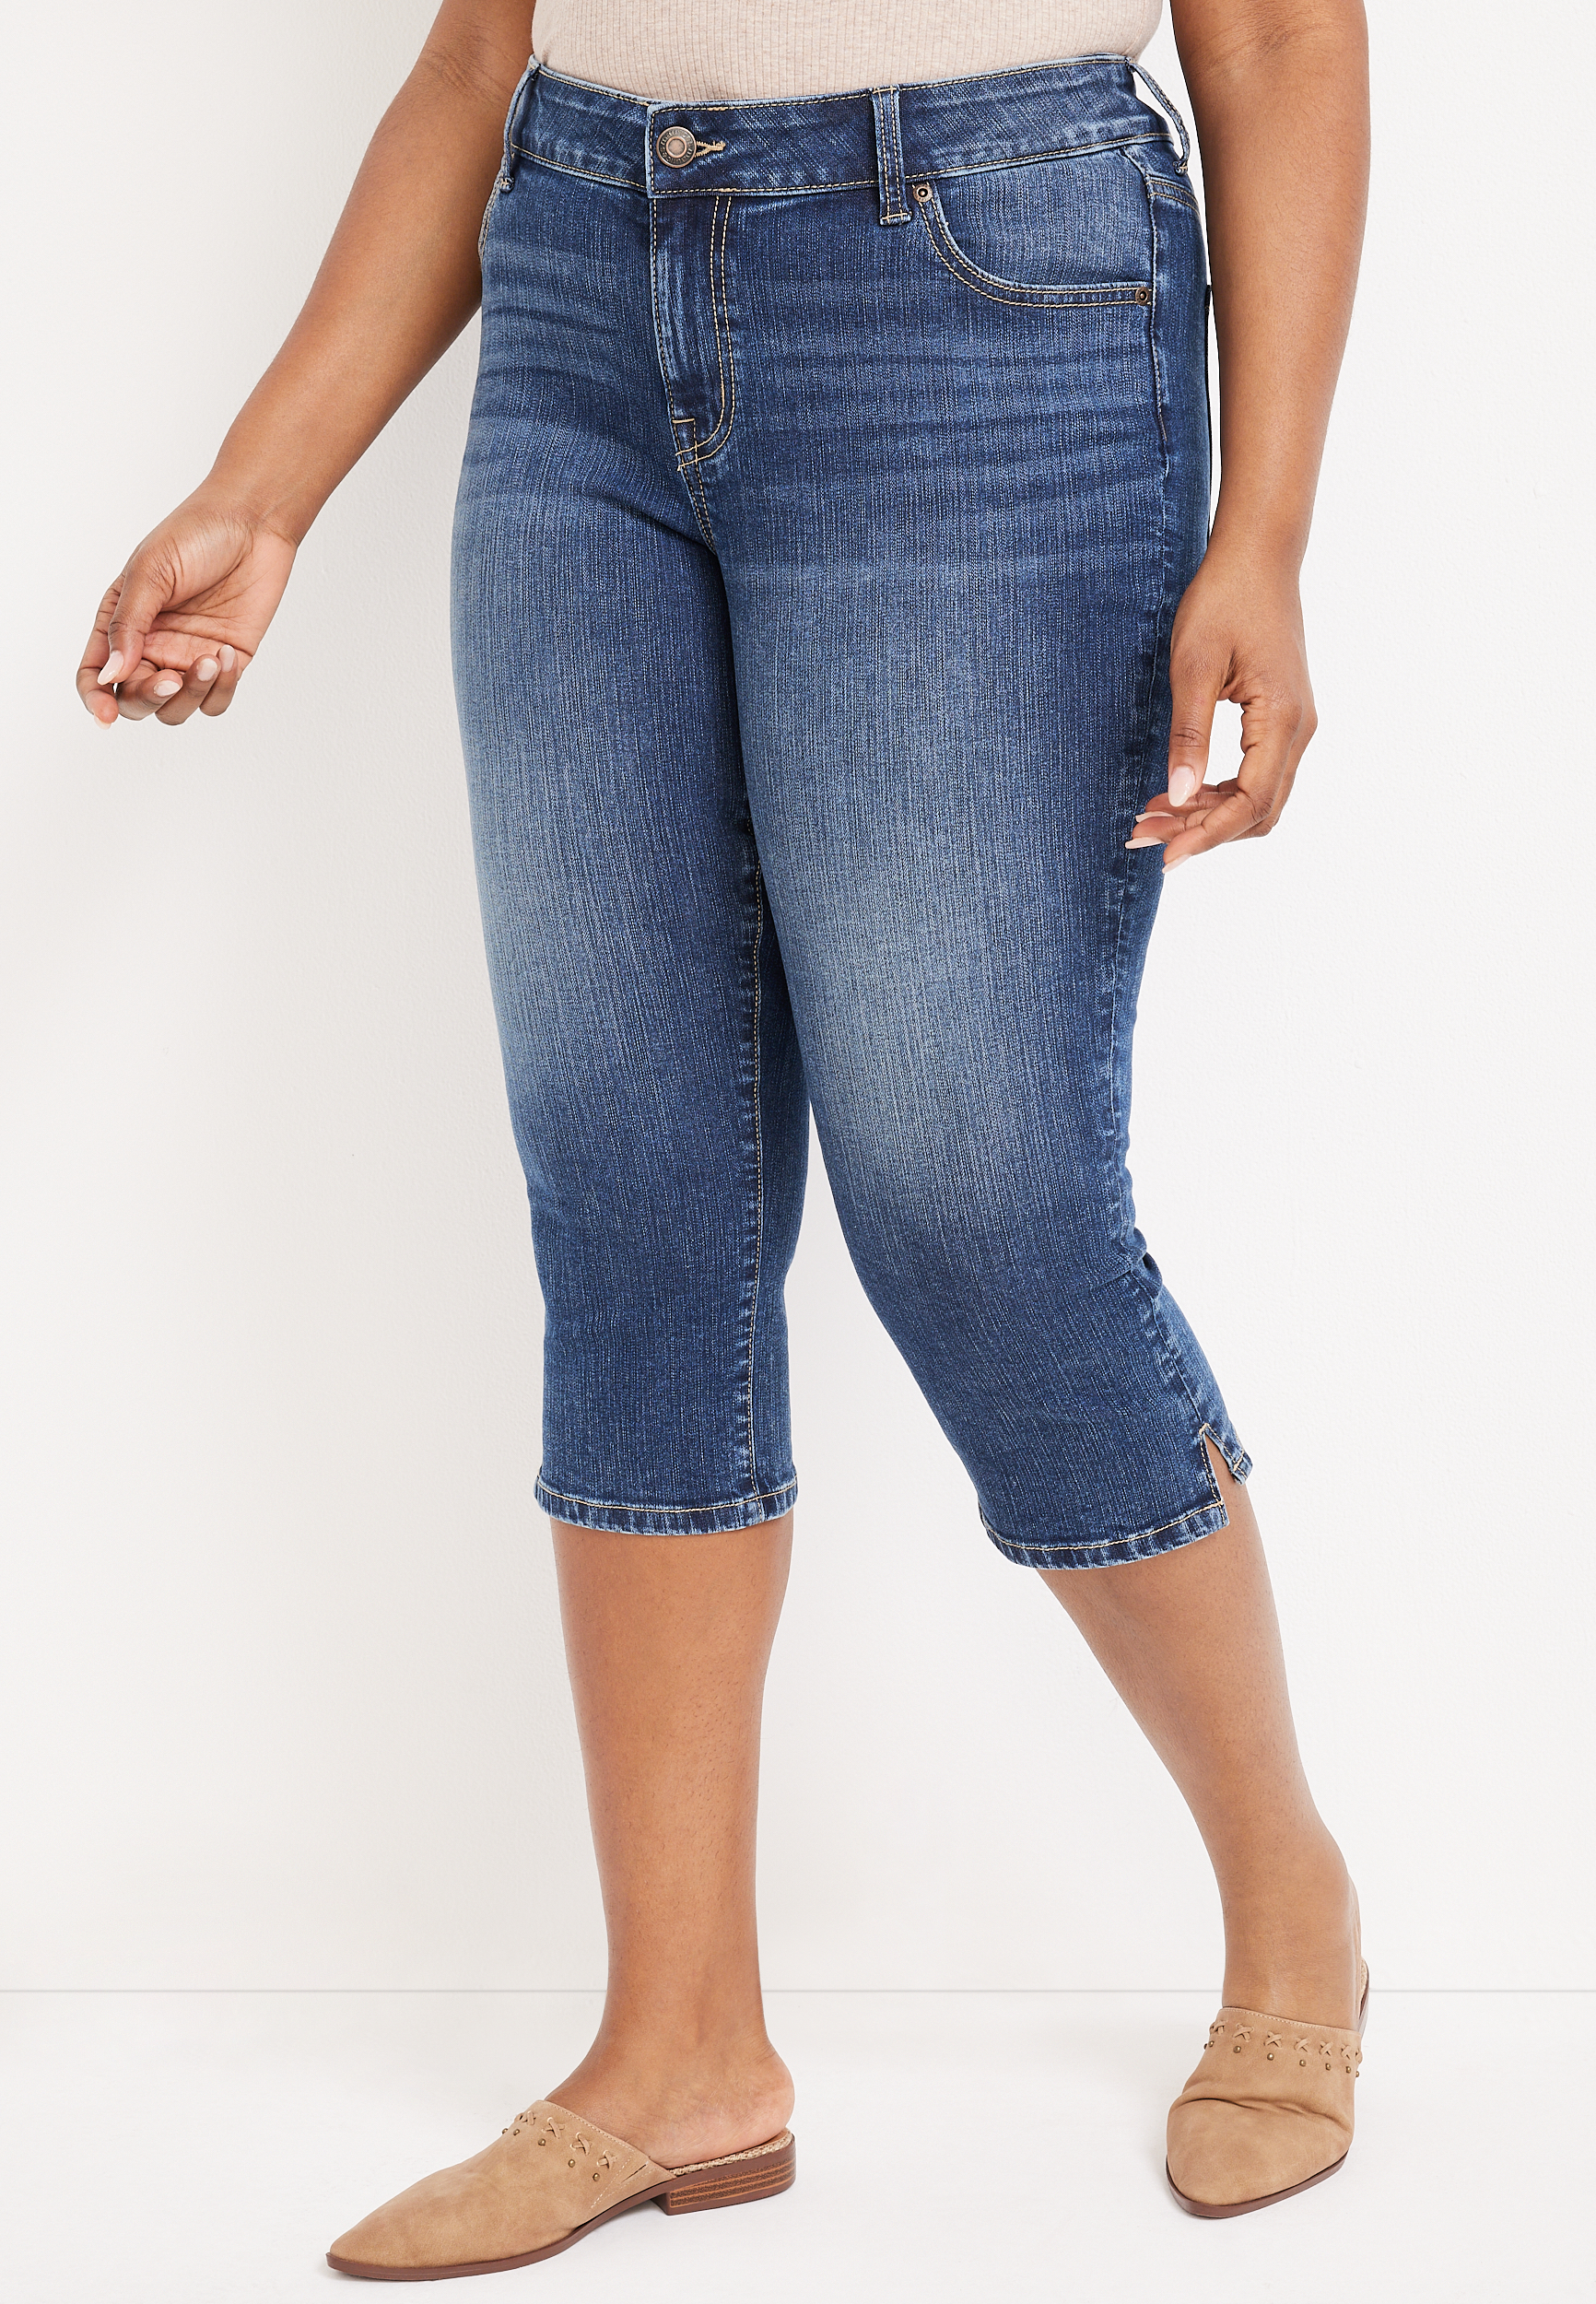 tilgivet nitrogen Konsekvent Plus Size m jeans by maurices™ Classic Mid Rise Capri | maurices